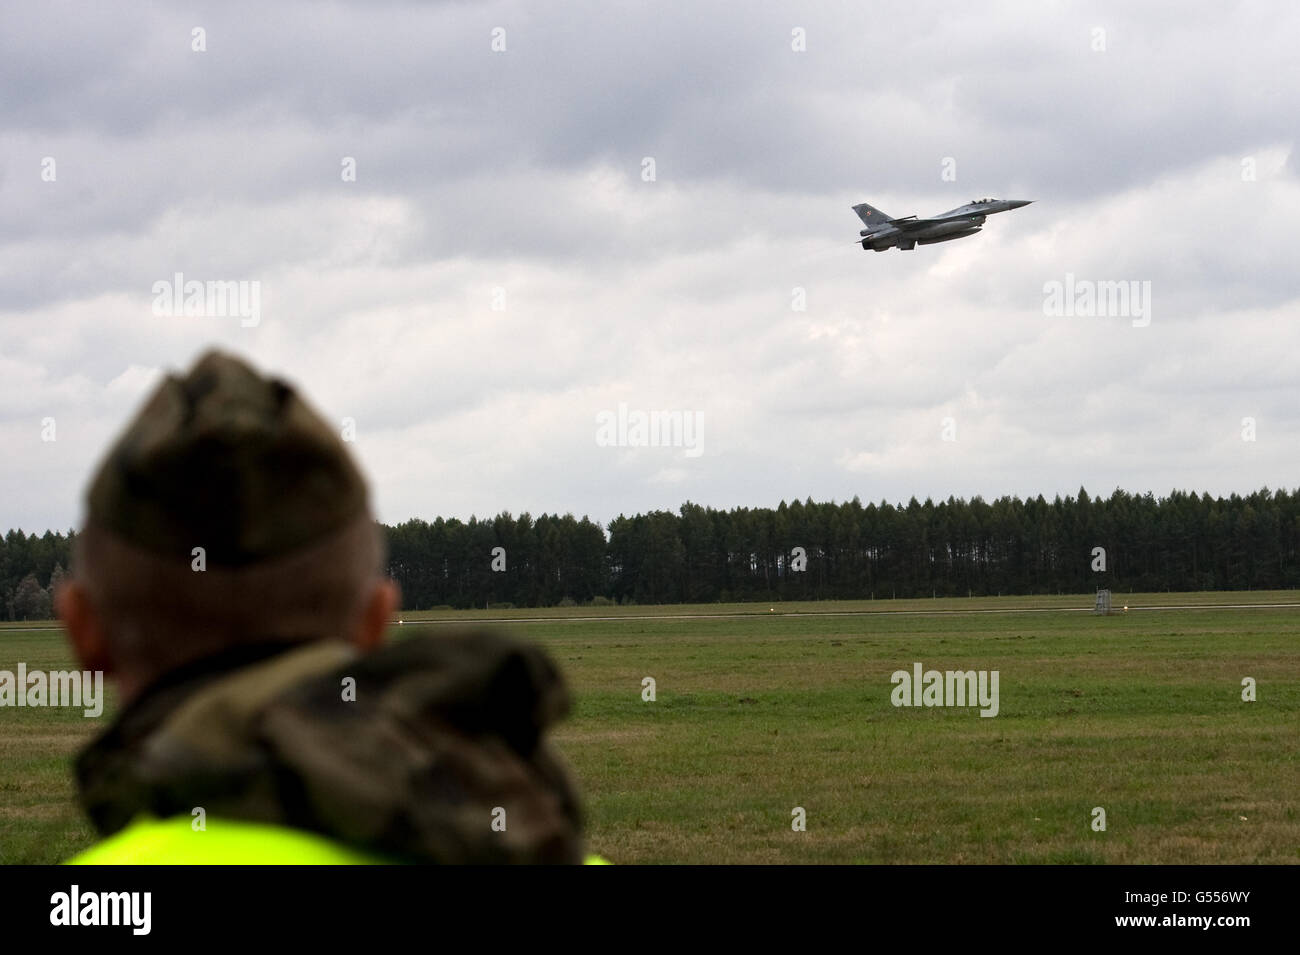 Lask, Pologne. 26 Septembre, 2015. Chasseur à réaction F16 de l'Armée de l'Air polonaise ©Marcin Rozpedowski/Alamy Stock Photo Banque D'Images